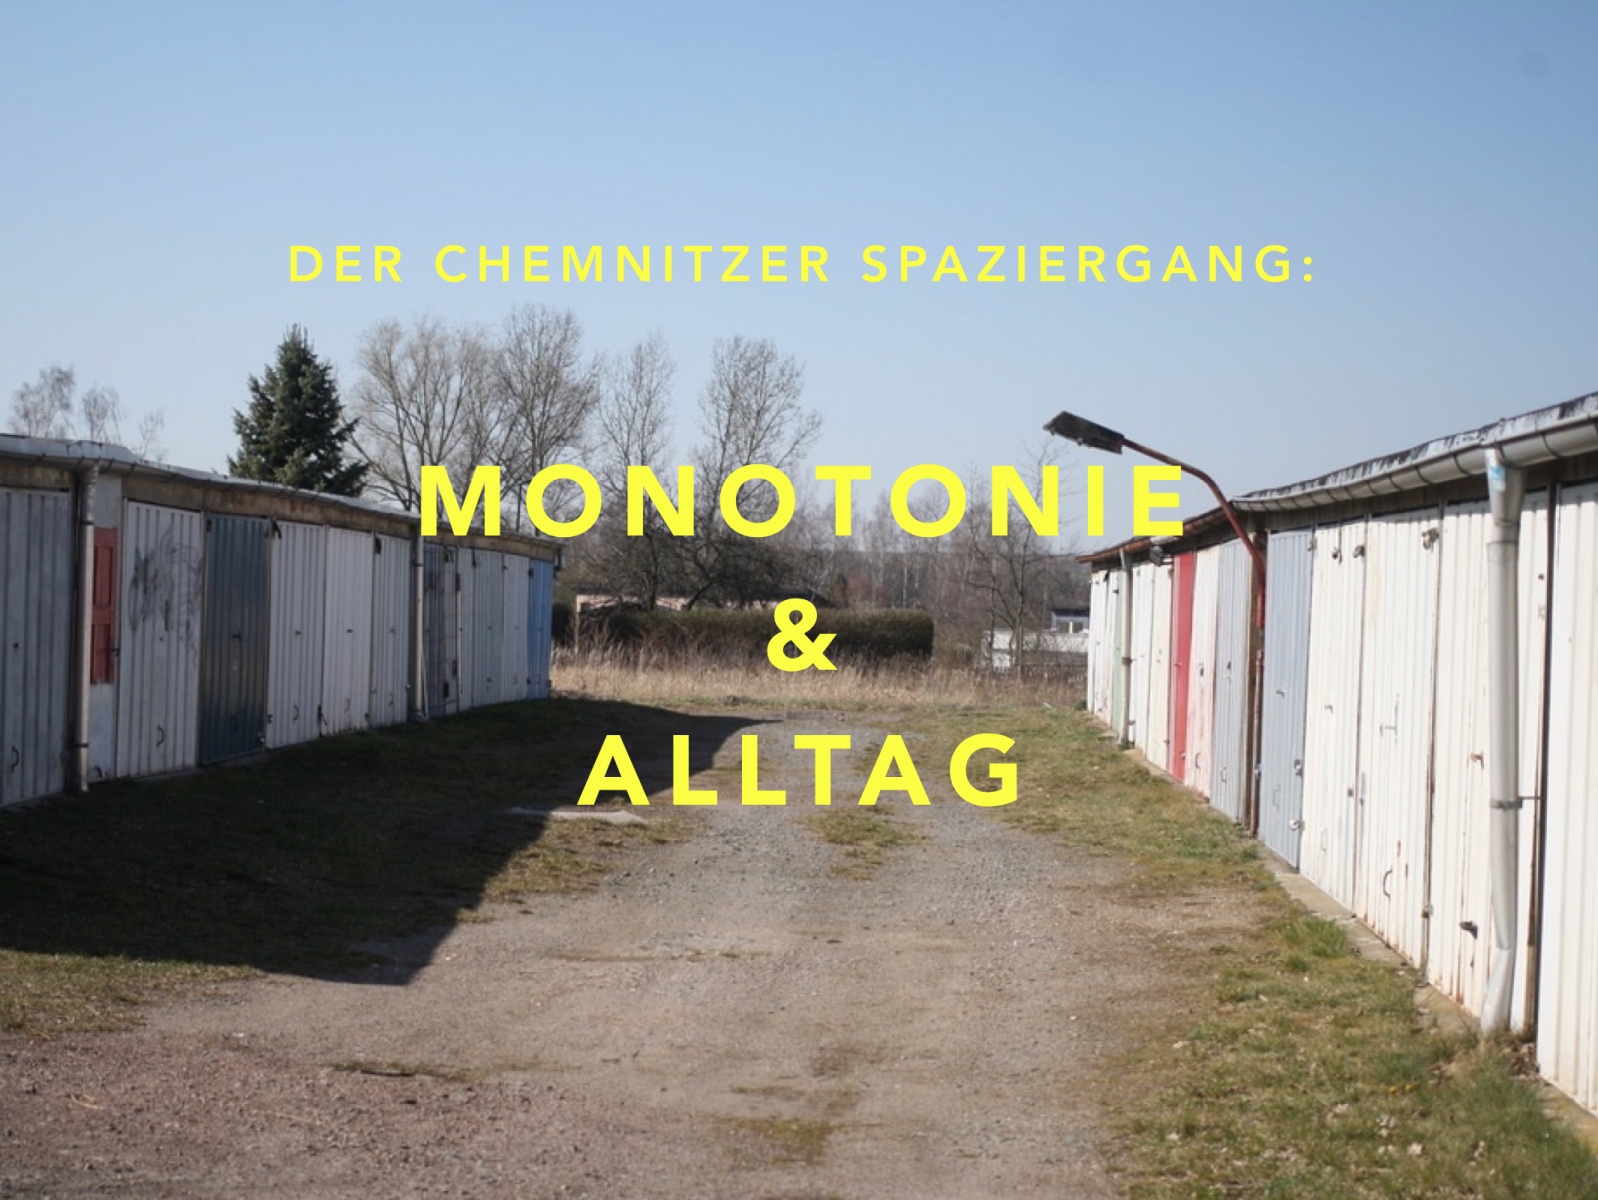 Monotonie & Alltag: Der Chemnitzer Spaziergang